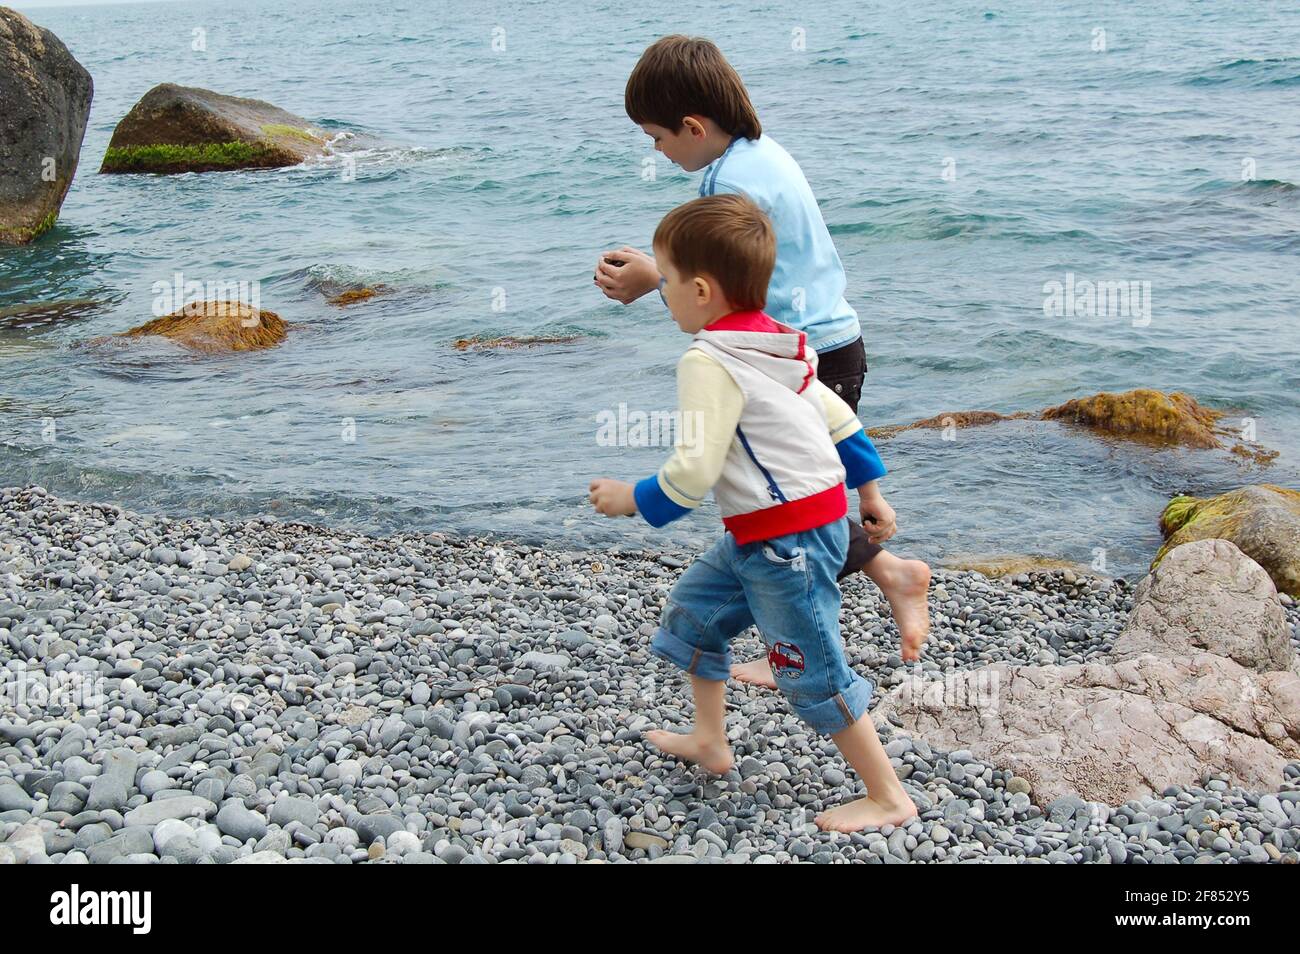 Yalta, Ukraine - 03.05.2009: Les garçons courent le long de la mer. Les enfants adorent jouer avec des pierres sur la plage de galets. Banque D'Images